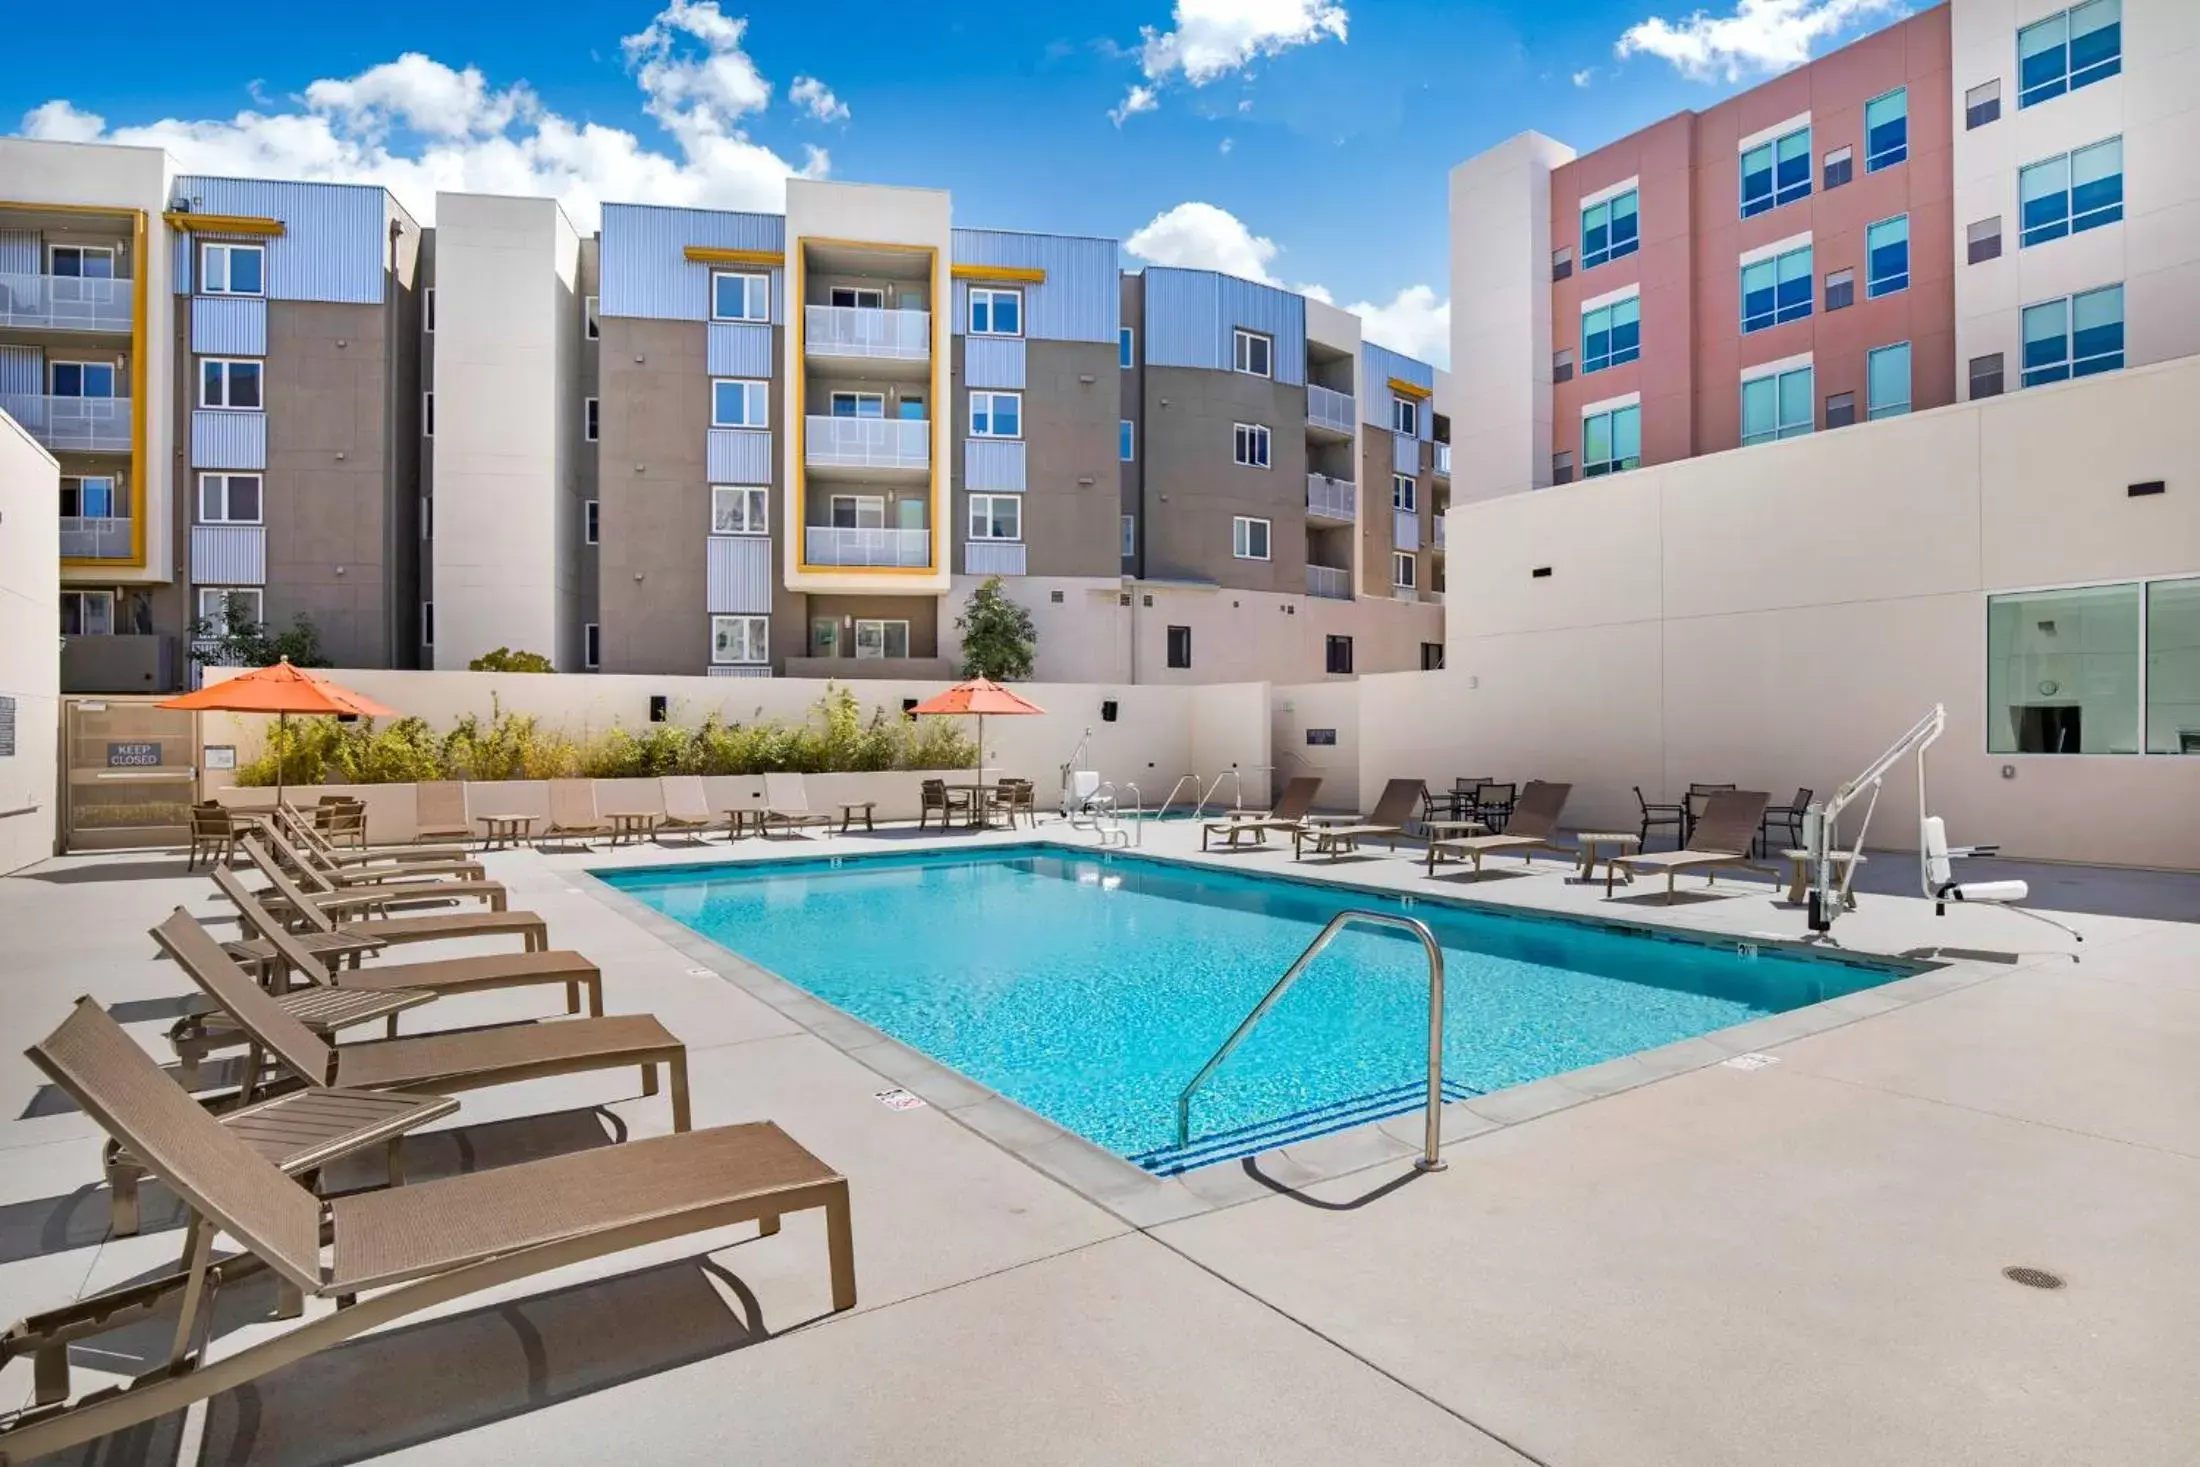 Swimming Pool in Hyatt House LA - University Medical Center